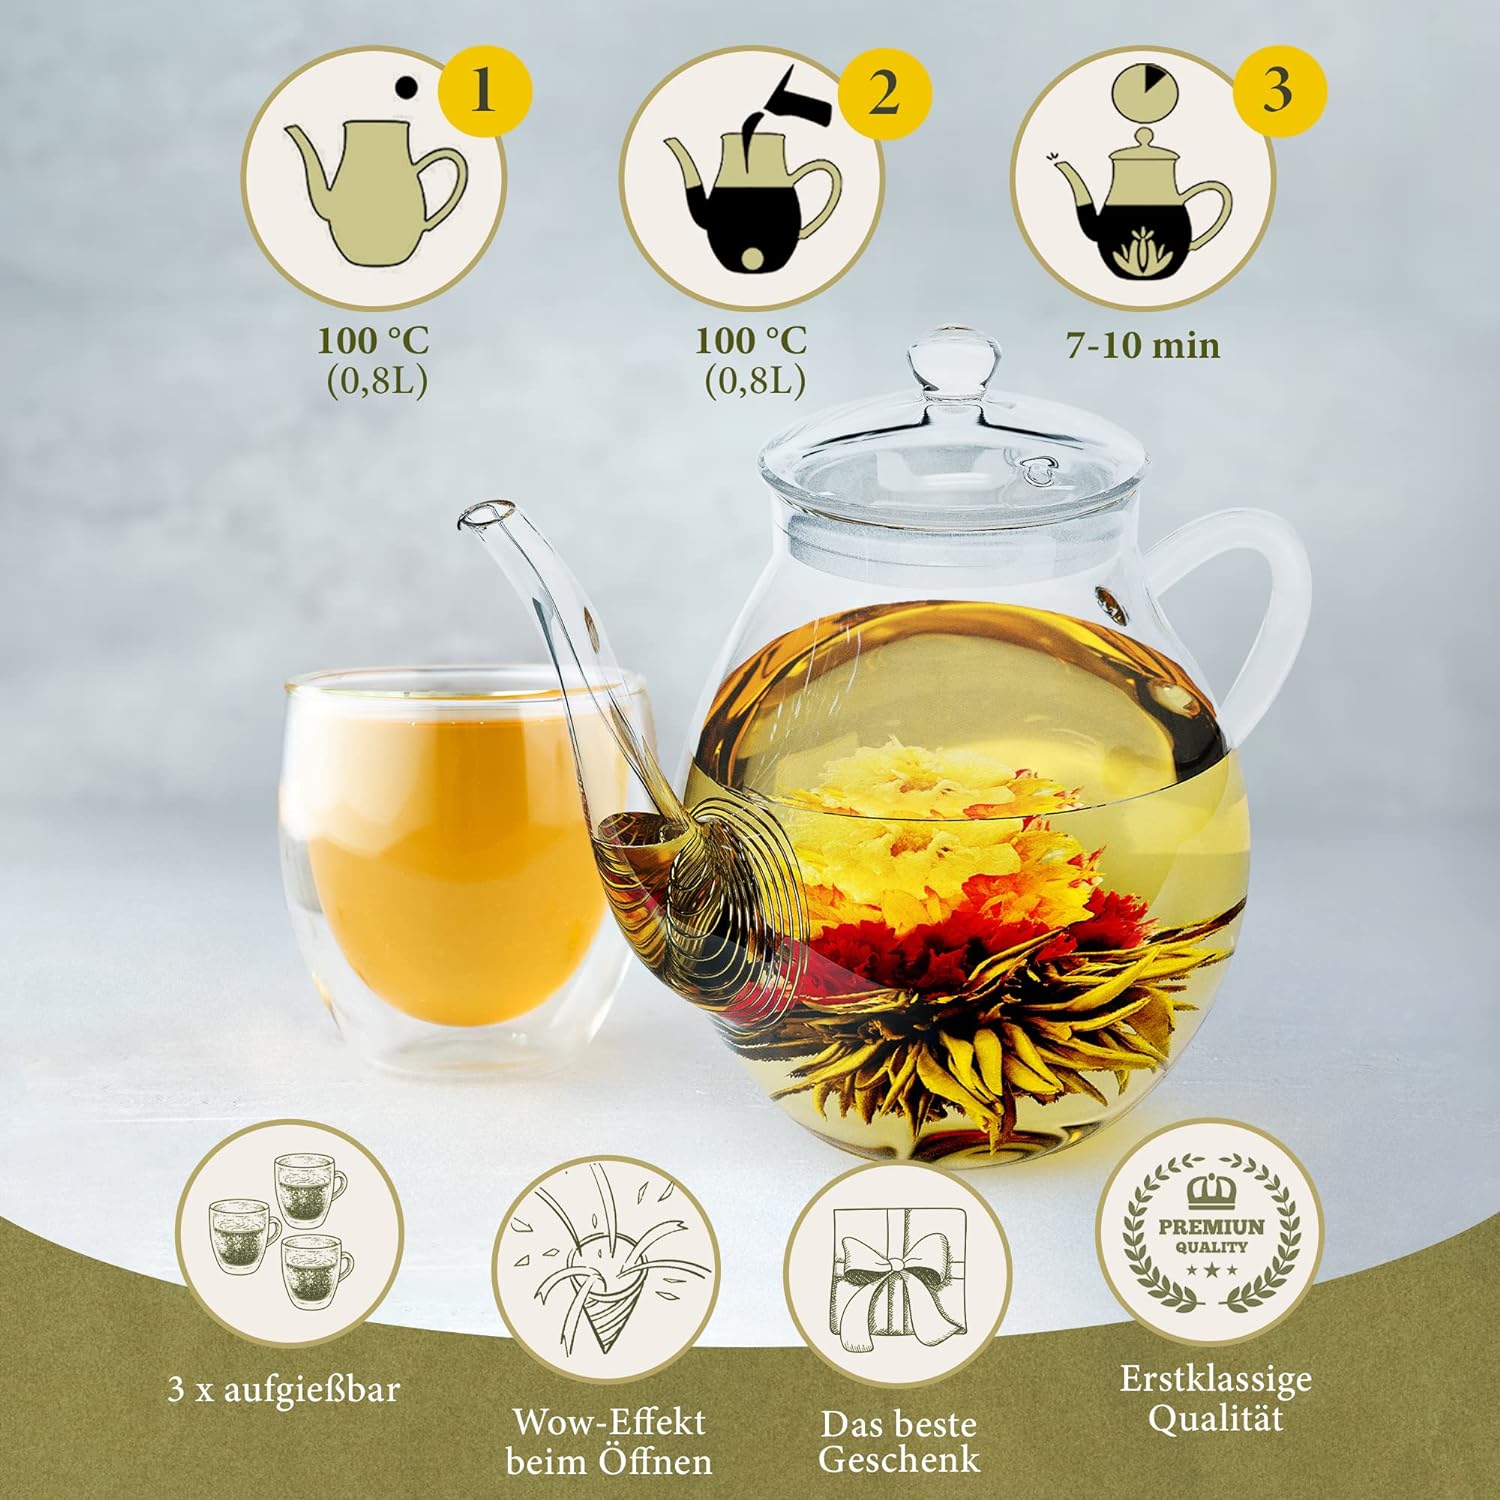 YC Yang Chai Teeblumen Mix "Admira" - Tee Geschenkset Frauen - 6 Erblühtee in 5 verschiedene Sorten - Grüner Tee - Teerosen, Blooming Tea